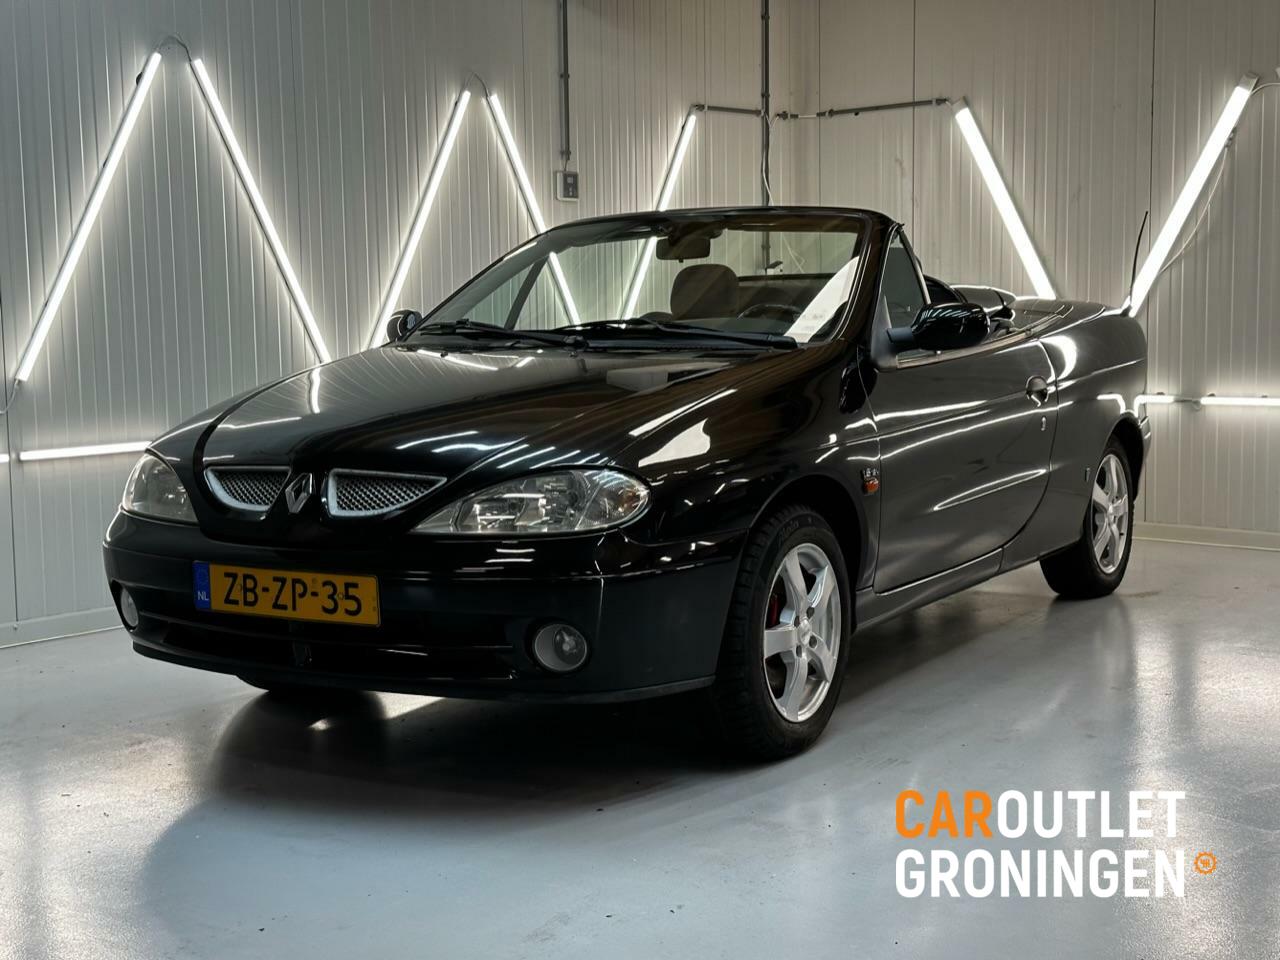 Caroutlet Groningen - Renault Megane Cabrio 1.6-16V Sport | NAP | GOED ONDERHOUDEN